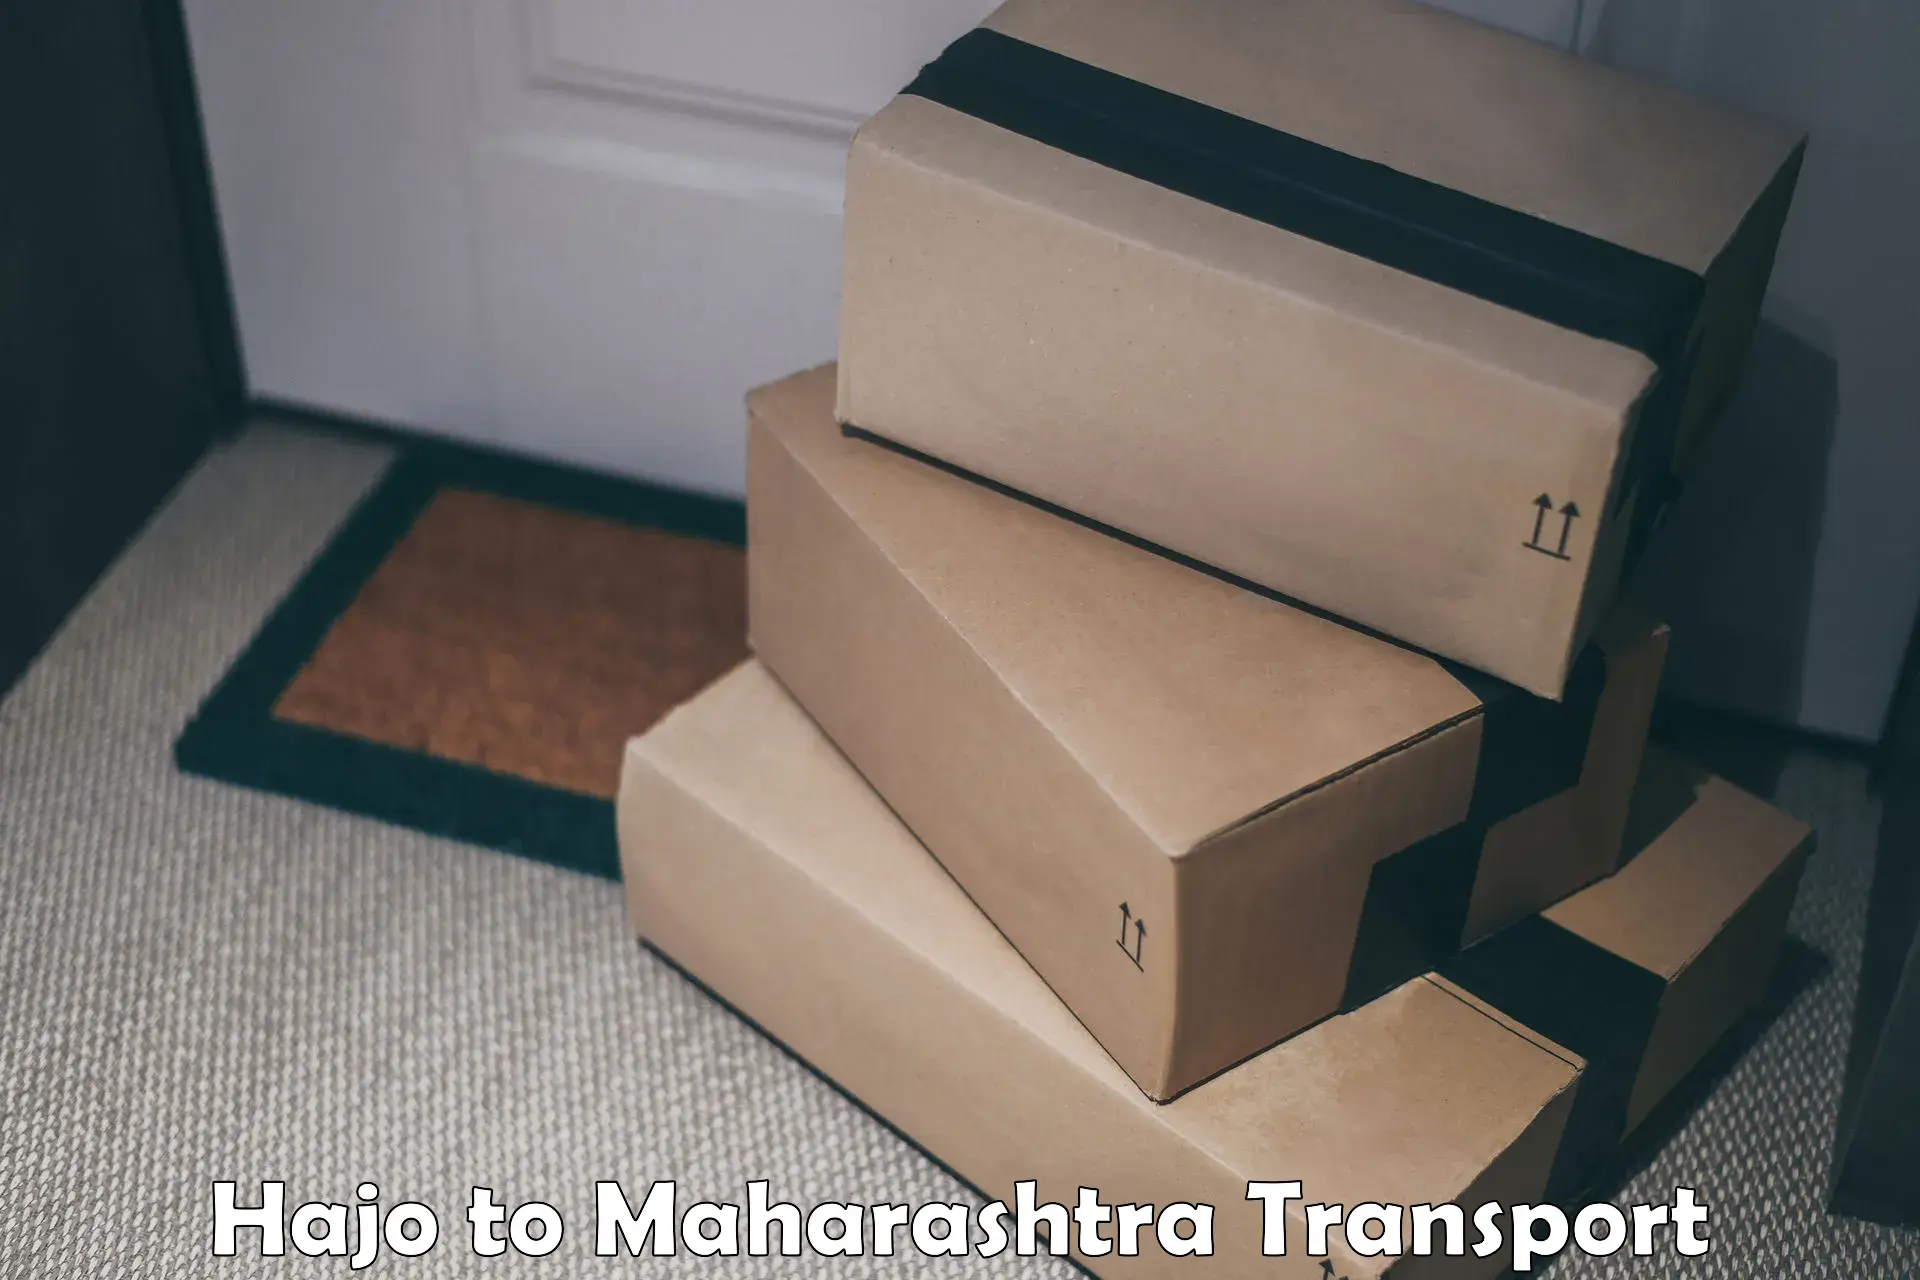 Furniture transport service Hajo to Maharashtra